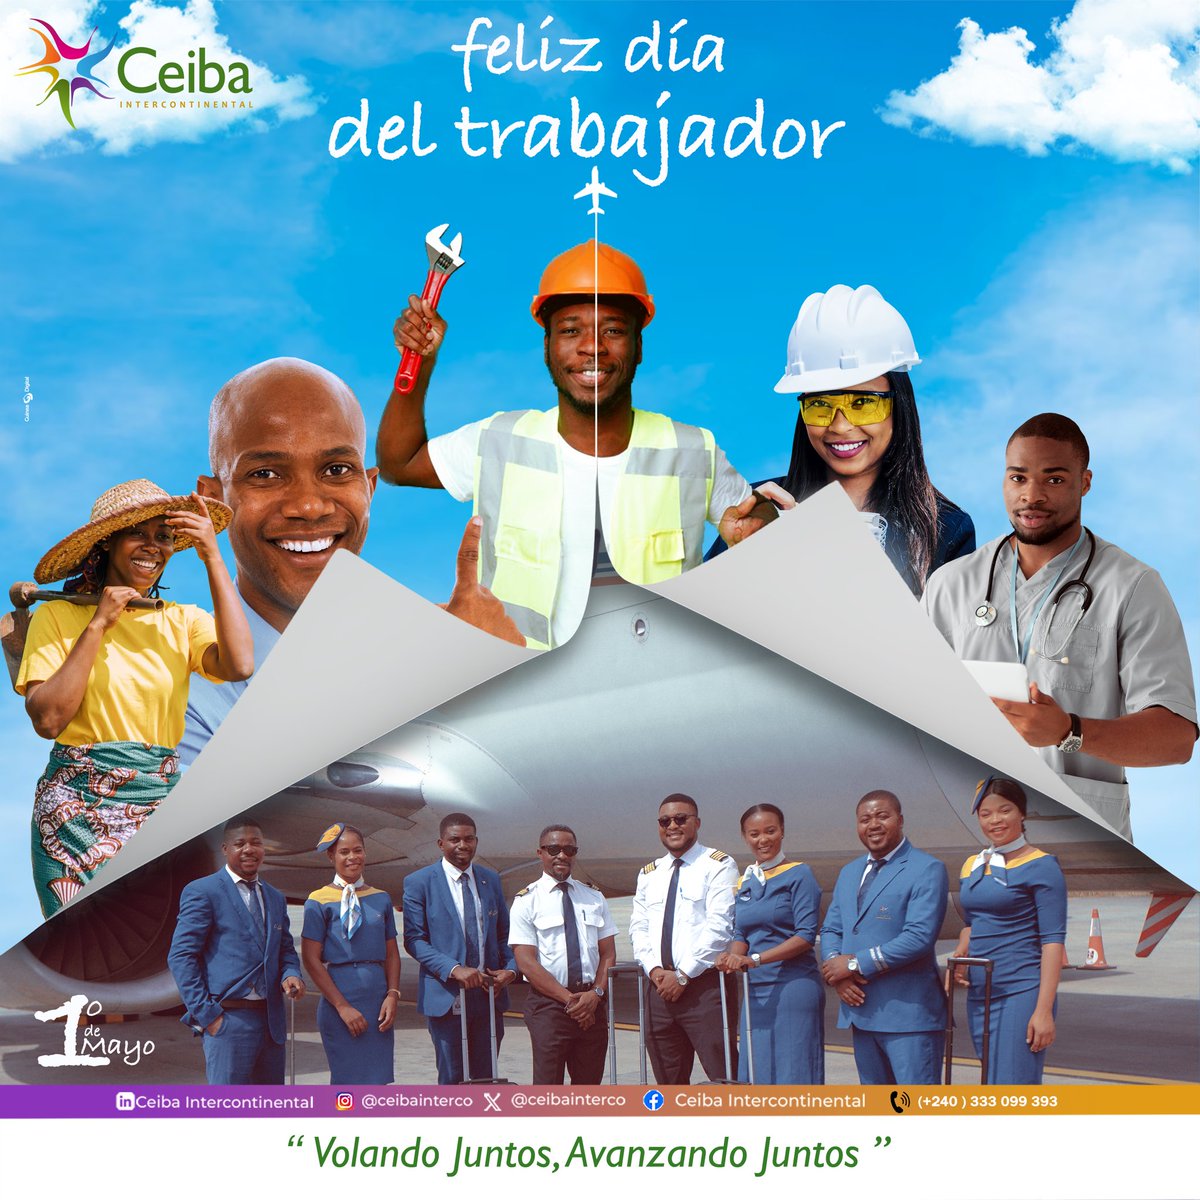 Feliz día a todos los trabajadores

#felizdia #flyceiba #malabo #bata #guineaecuatorial #equatorialguinea #trabajadores #travelafrica